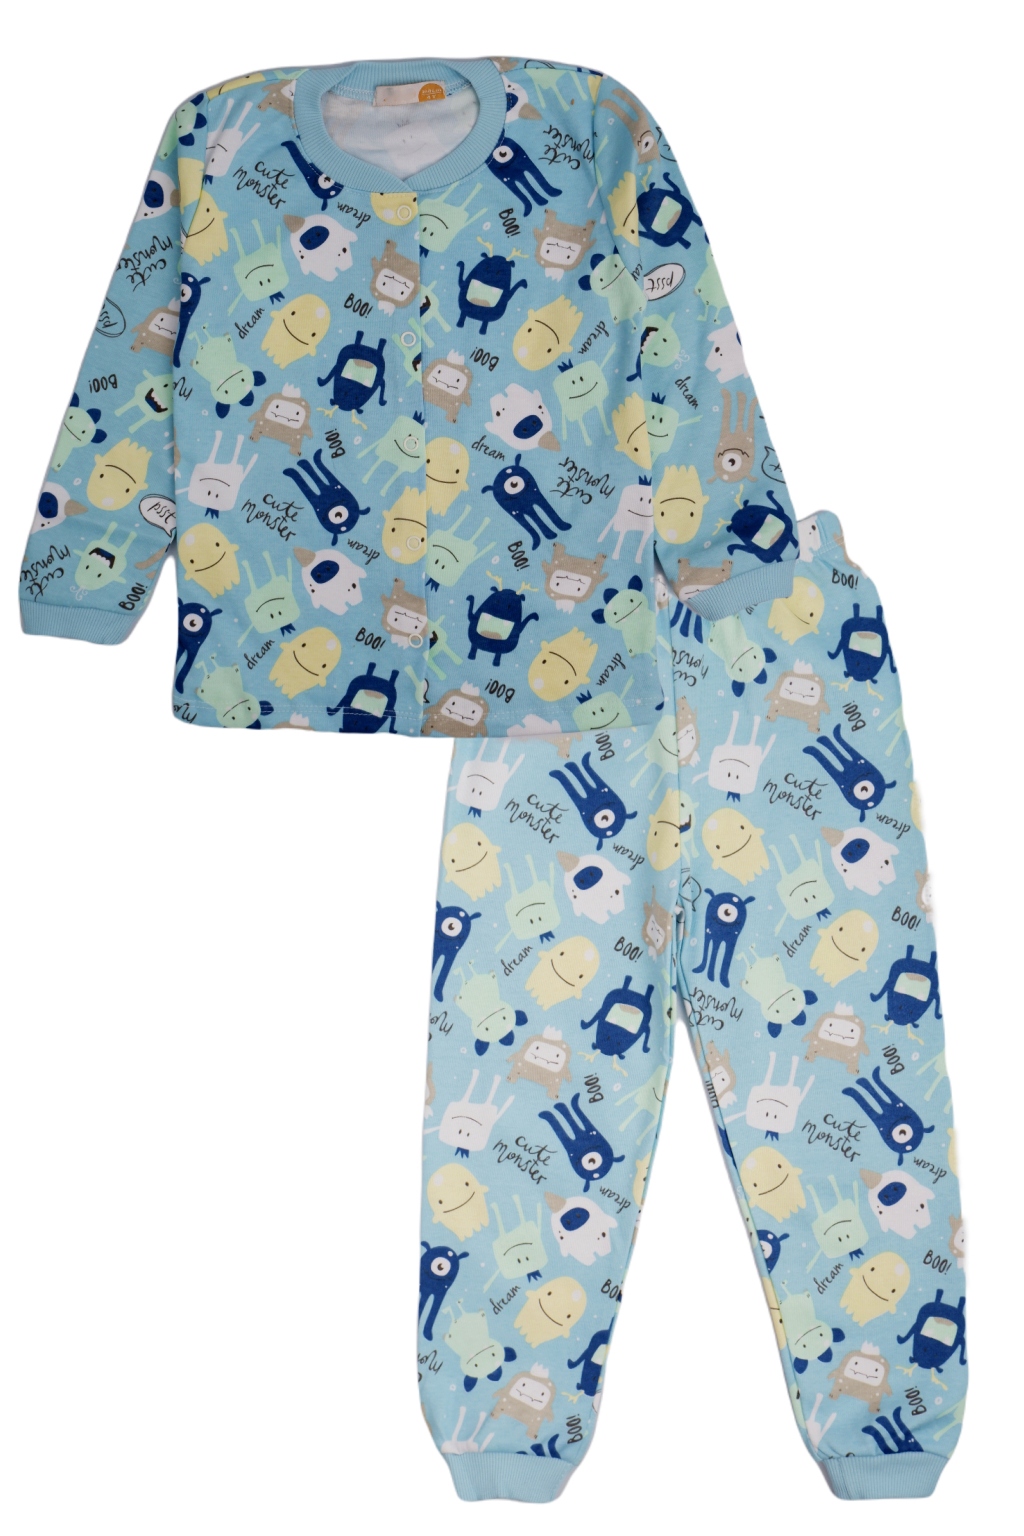 Dětské pyžamo Příšery, modrá/tyrkysová barva (Dětské oblečení) Velikost: 116